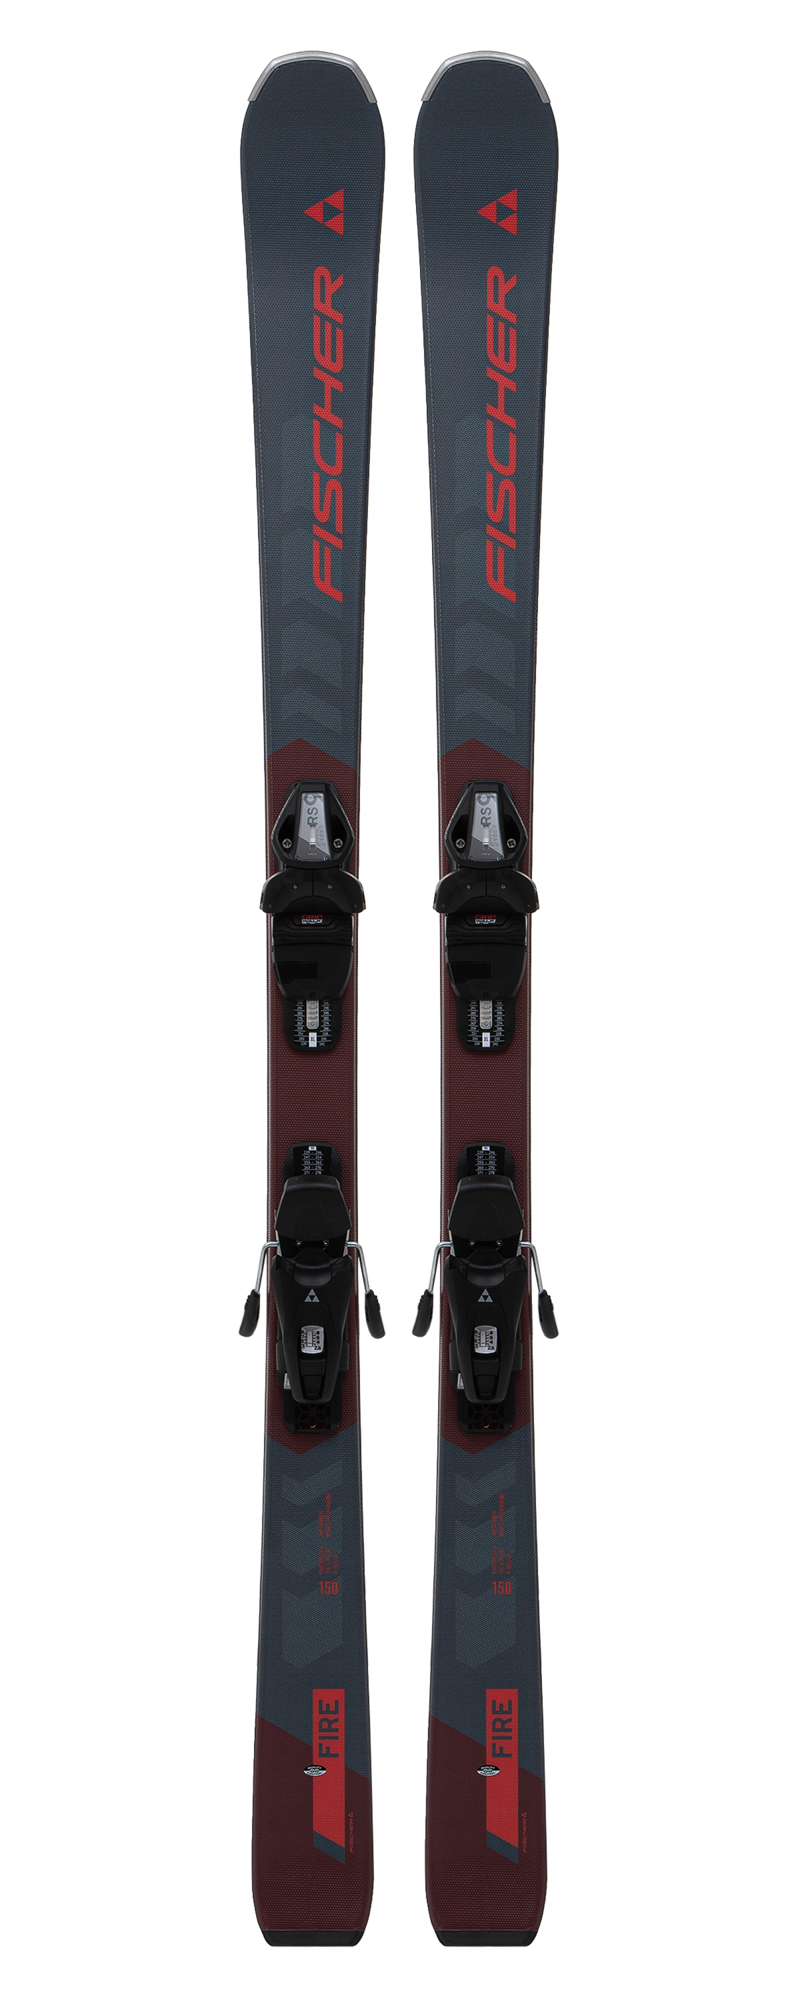 Горные лыжи с креплениями FISCHER RC FIRE + RS9 Solid black/Black